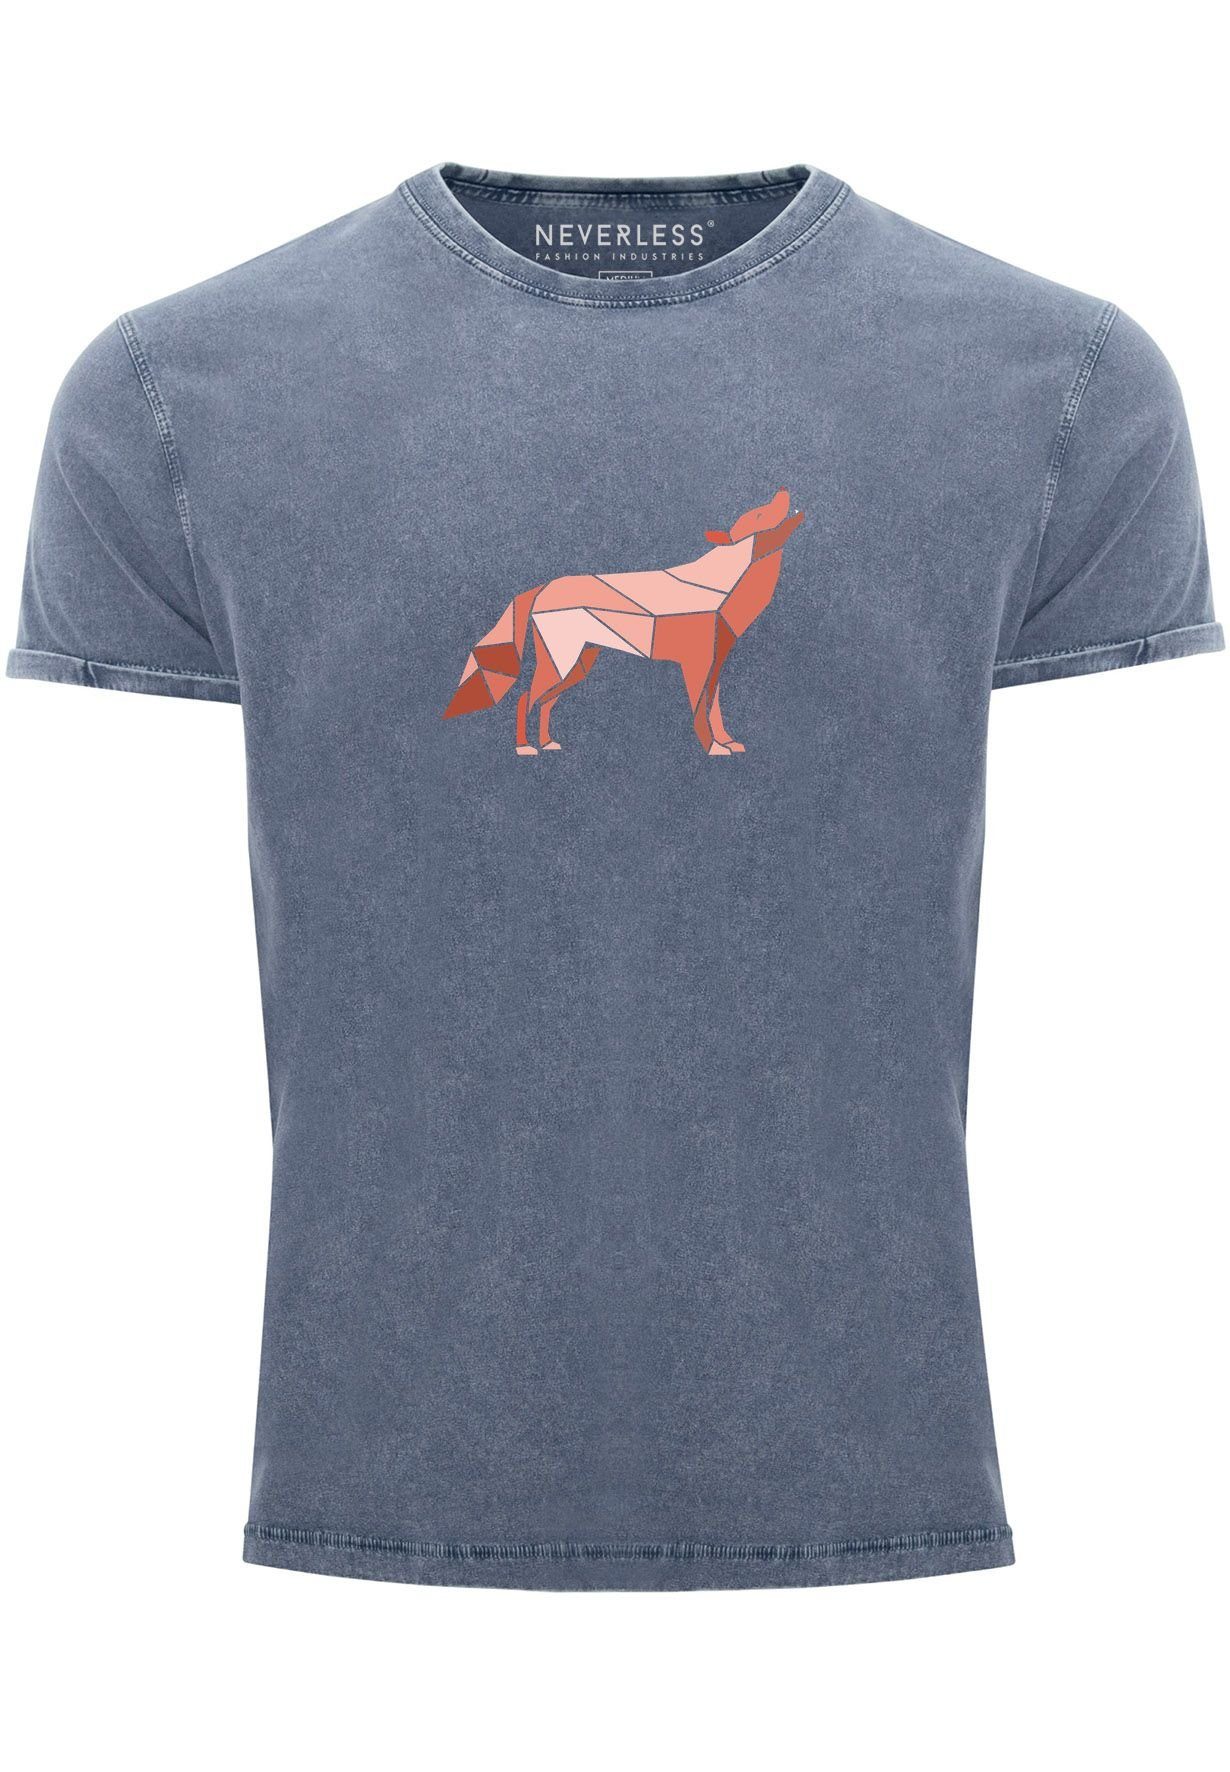 Neverless Print-Shirt Herren Vintage Shirt Outdoor Wil Aufdruck Print Polygon Geometrie mit Wolf Print blau